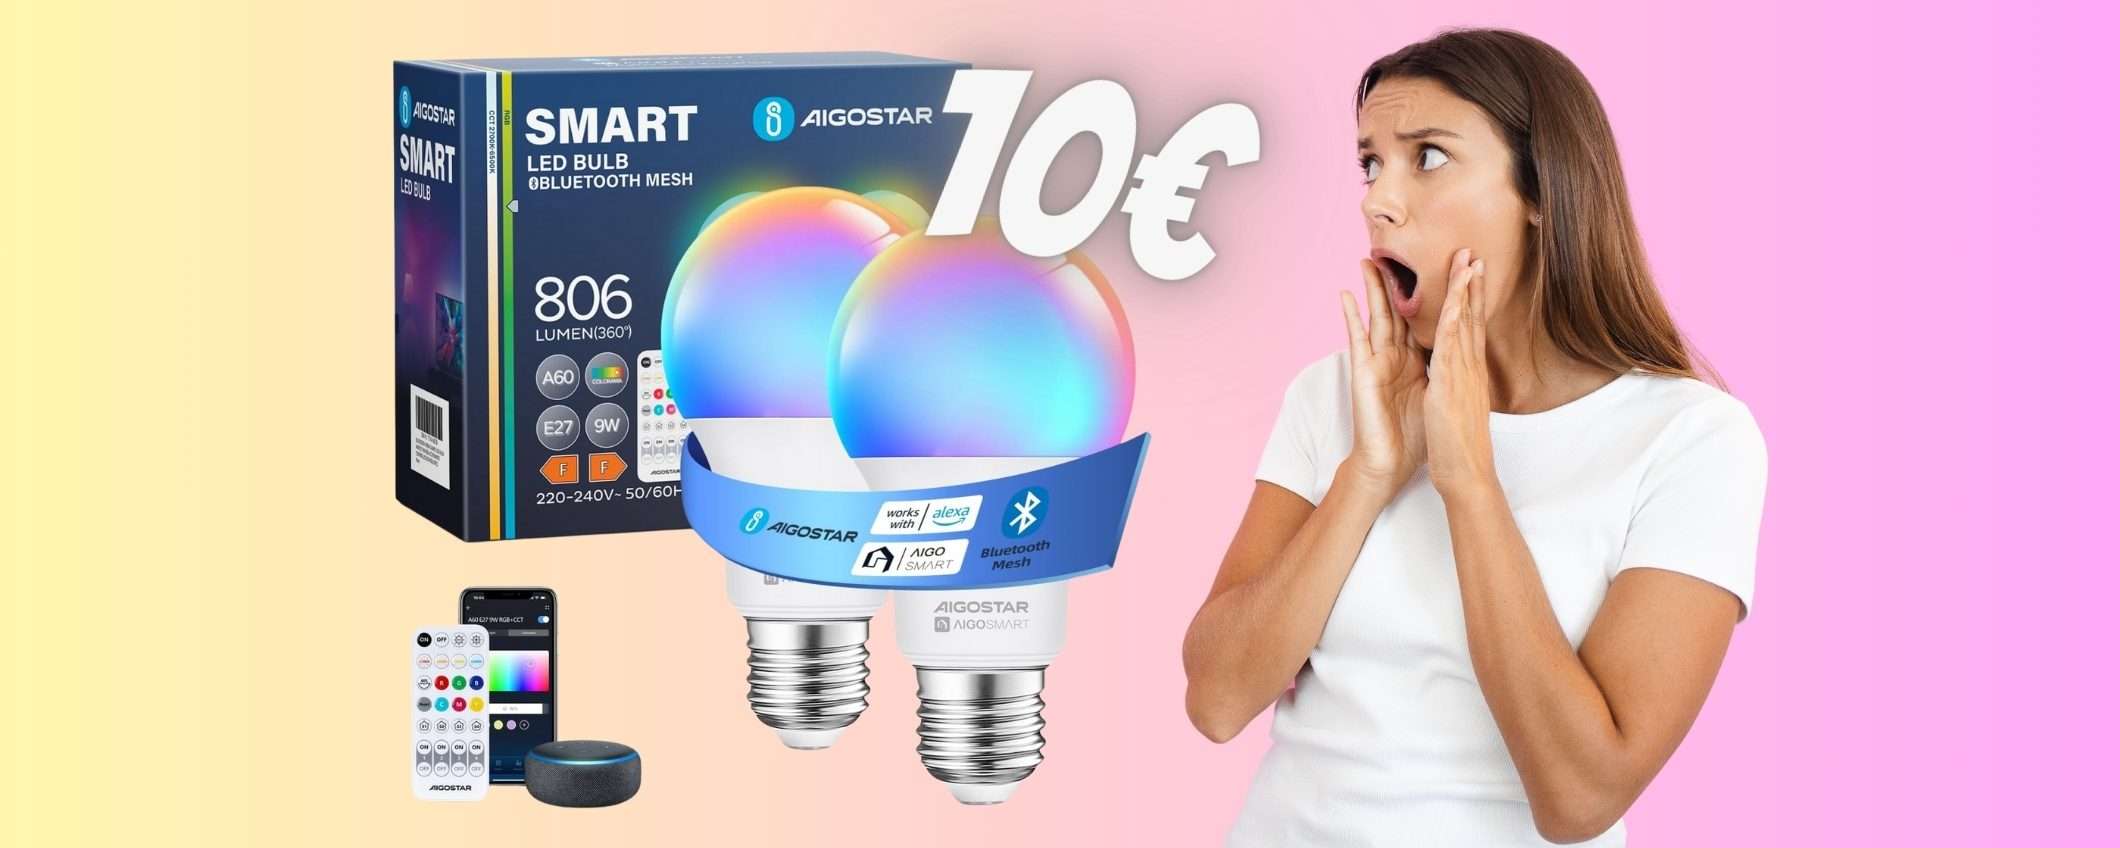 Lampadine WiFi multicolore compatibili con i comandi vocali a soli 10€